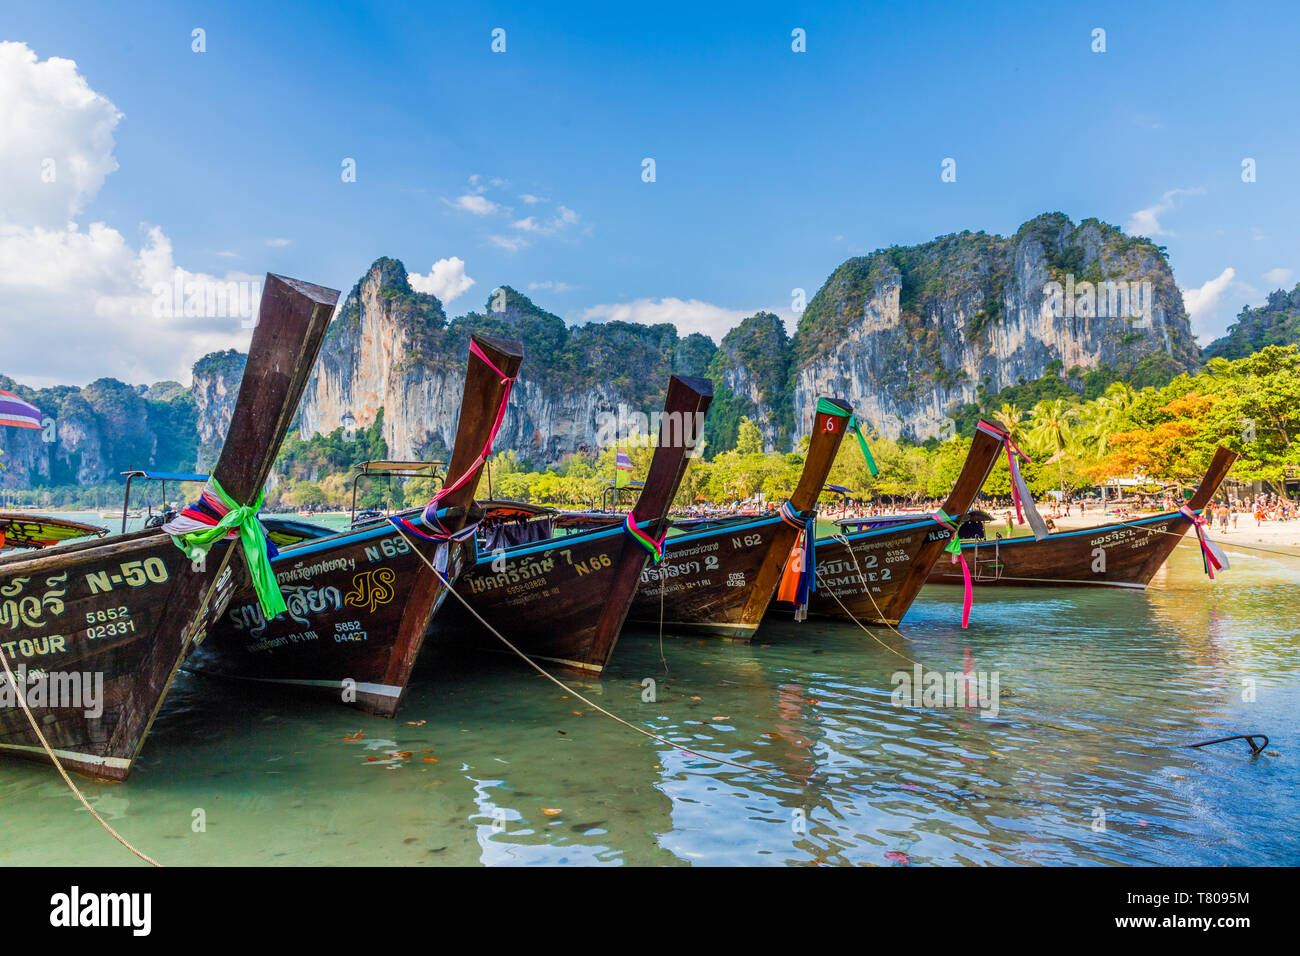 Longue queue bateaux et paysages karstiques sur Railay beach de Railay, Ao Nang, province de Krabi, Thaïlande, Asie du Sud, Asie Banque D'Images